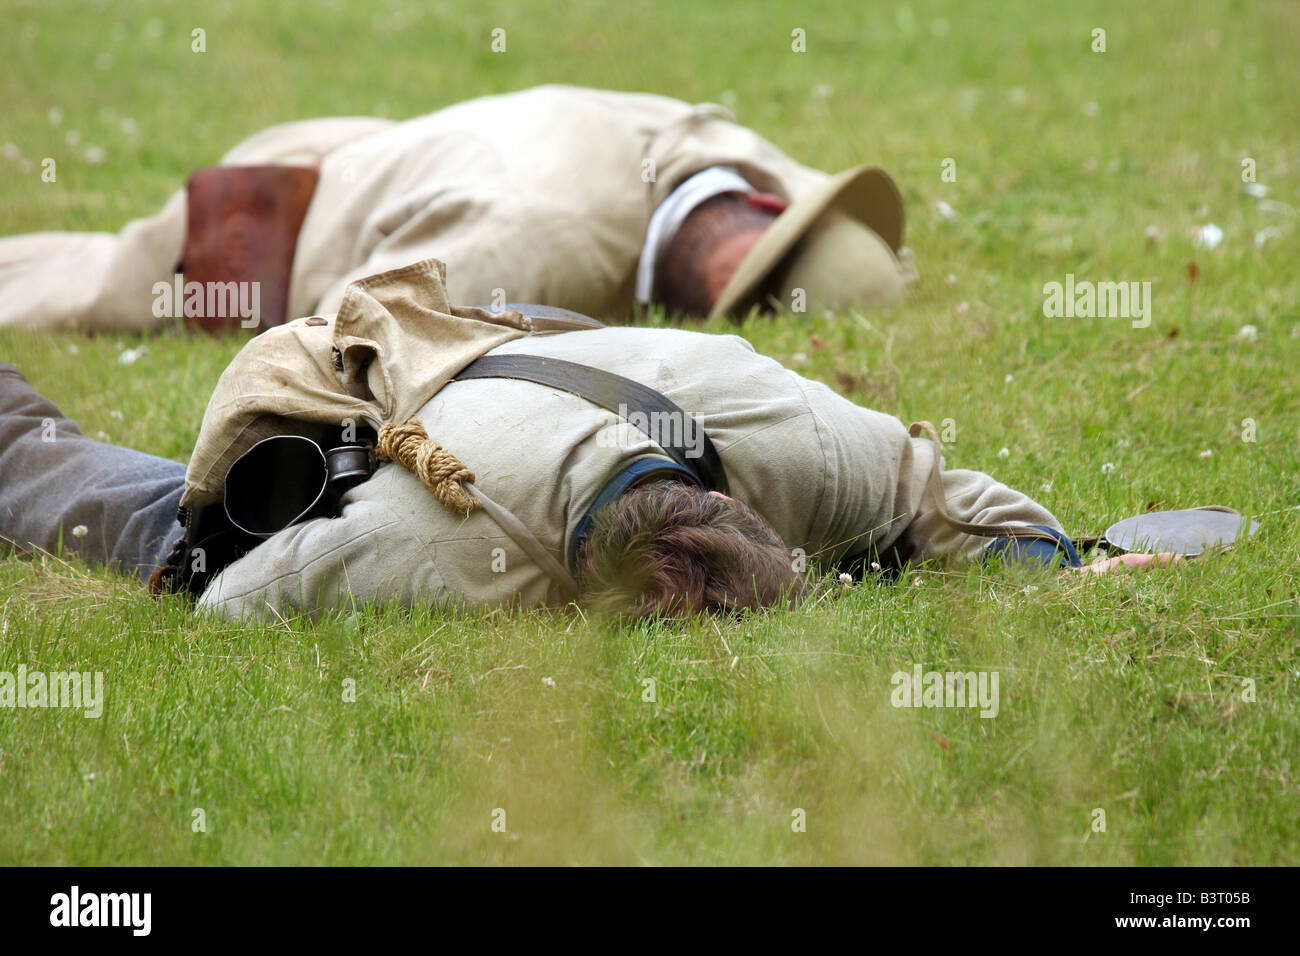 Les soldats confédérés blessés lors d'une guerre civile Reenactment Campement Banque D'Images